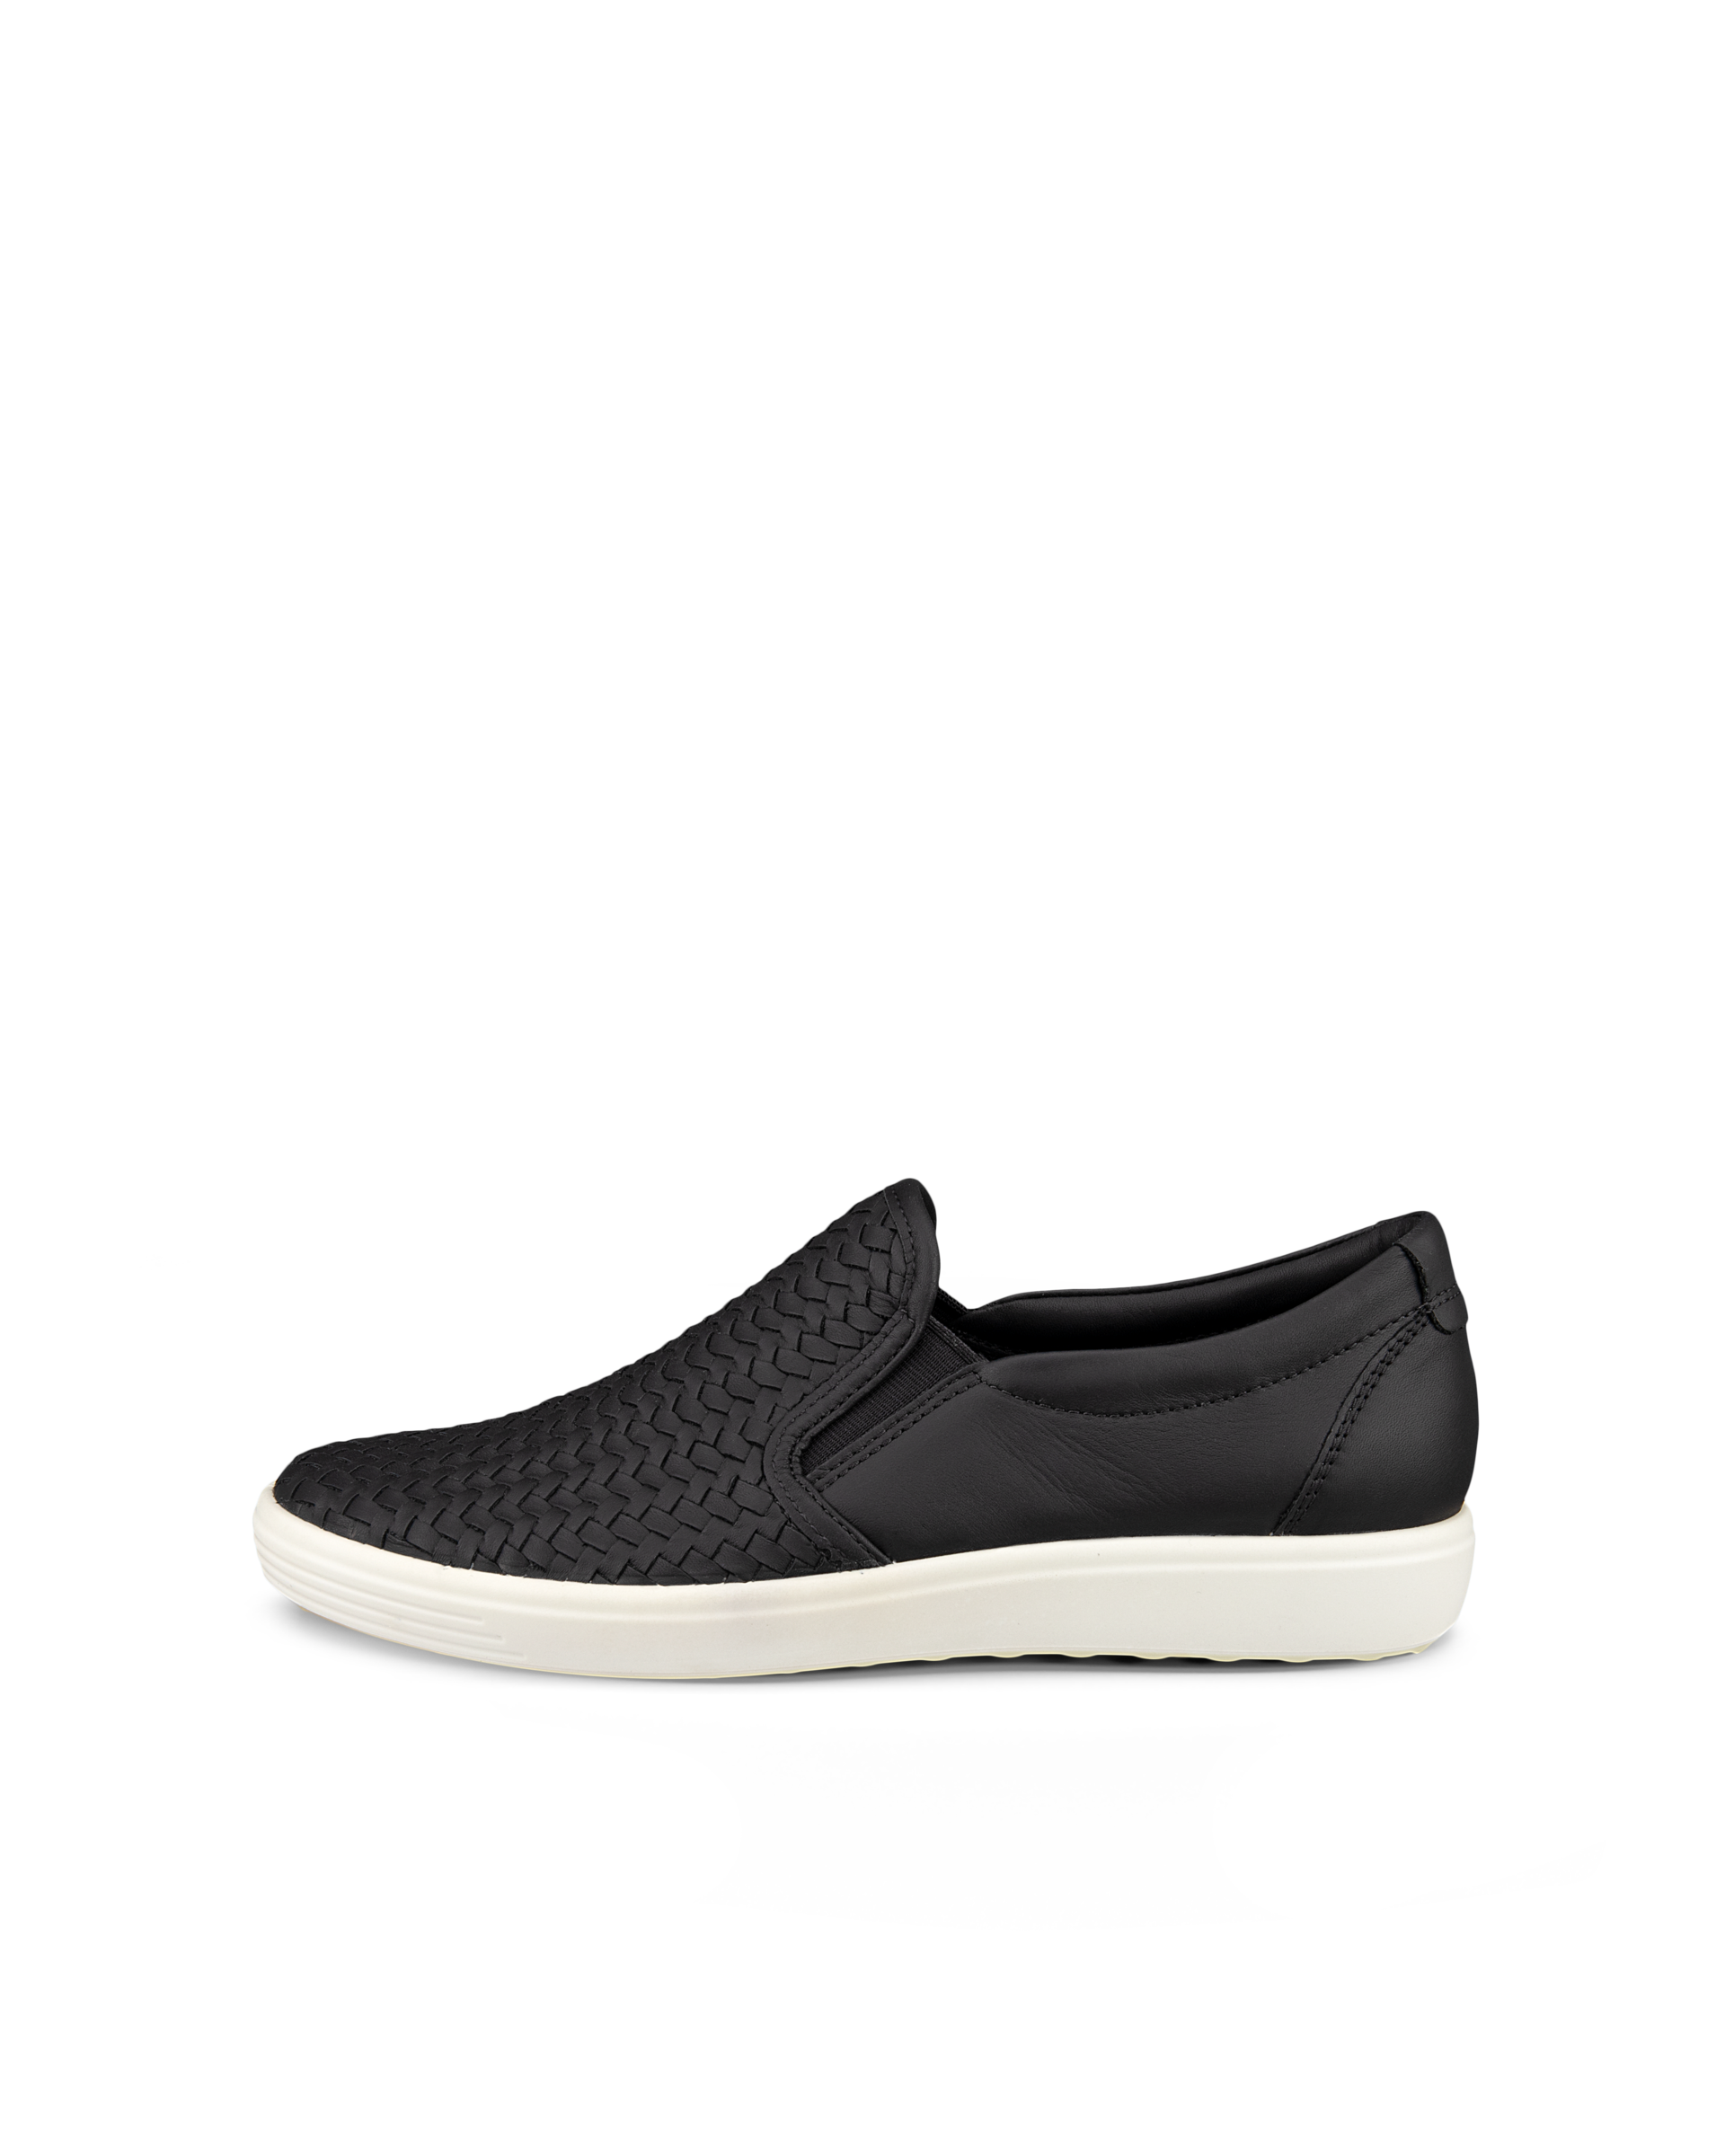 Black Crocodile Sneakers - Flatform Sneakers - Slip-On Sneakers - Lulus